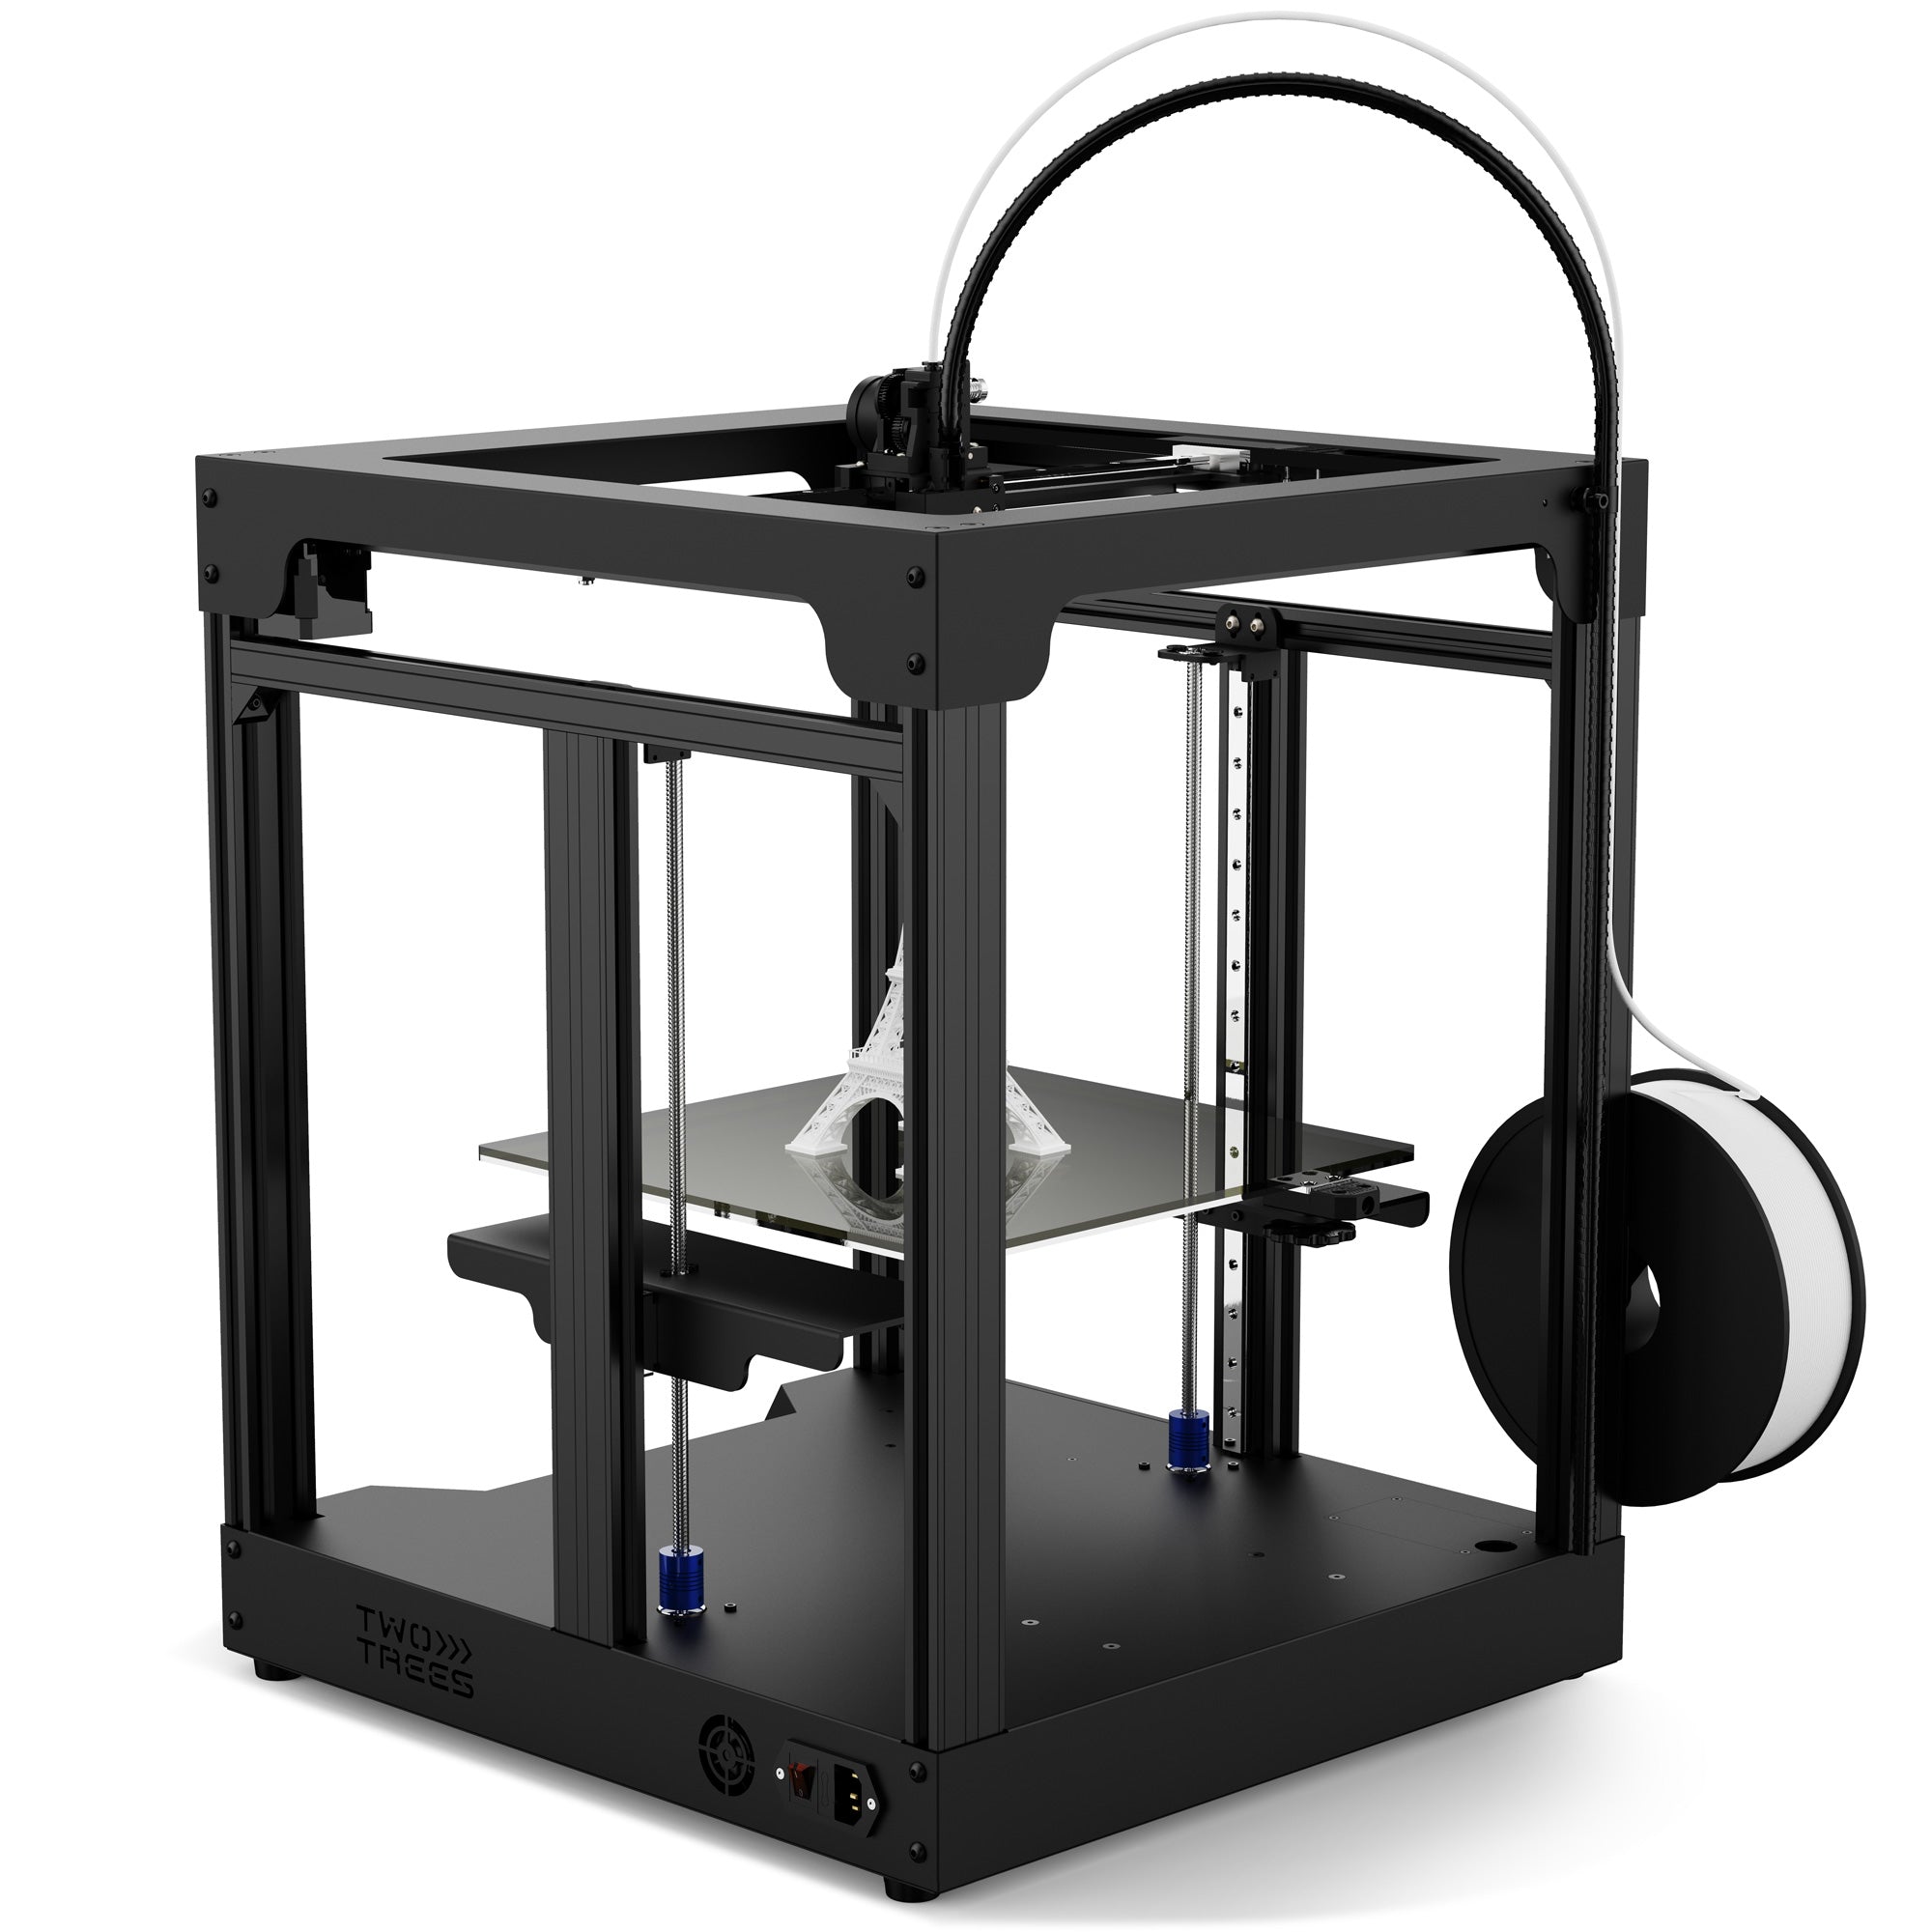 【💥 $50 OFF | Coupon: TT50】SP-5 V3 CoreXY 3D Printer - TwoTrees